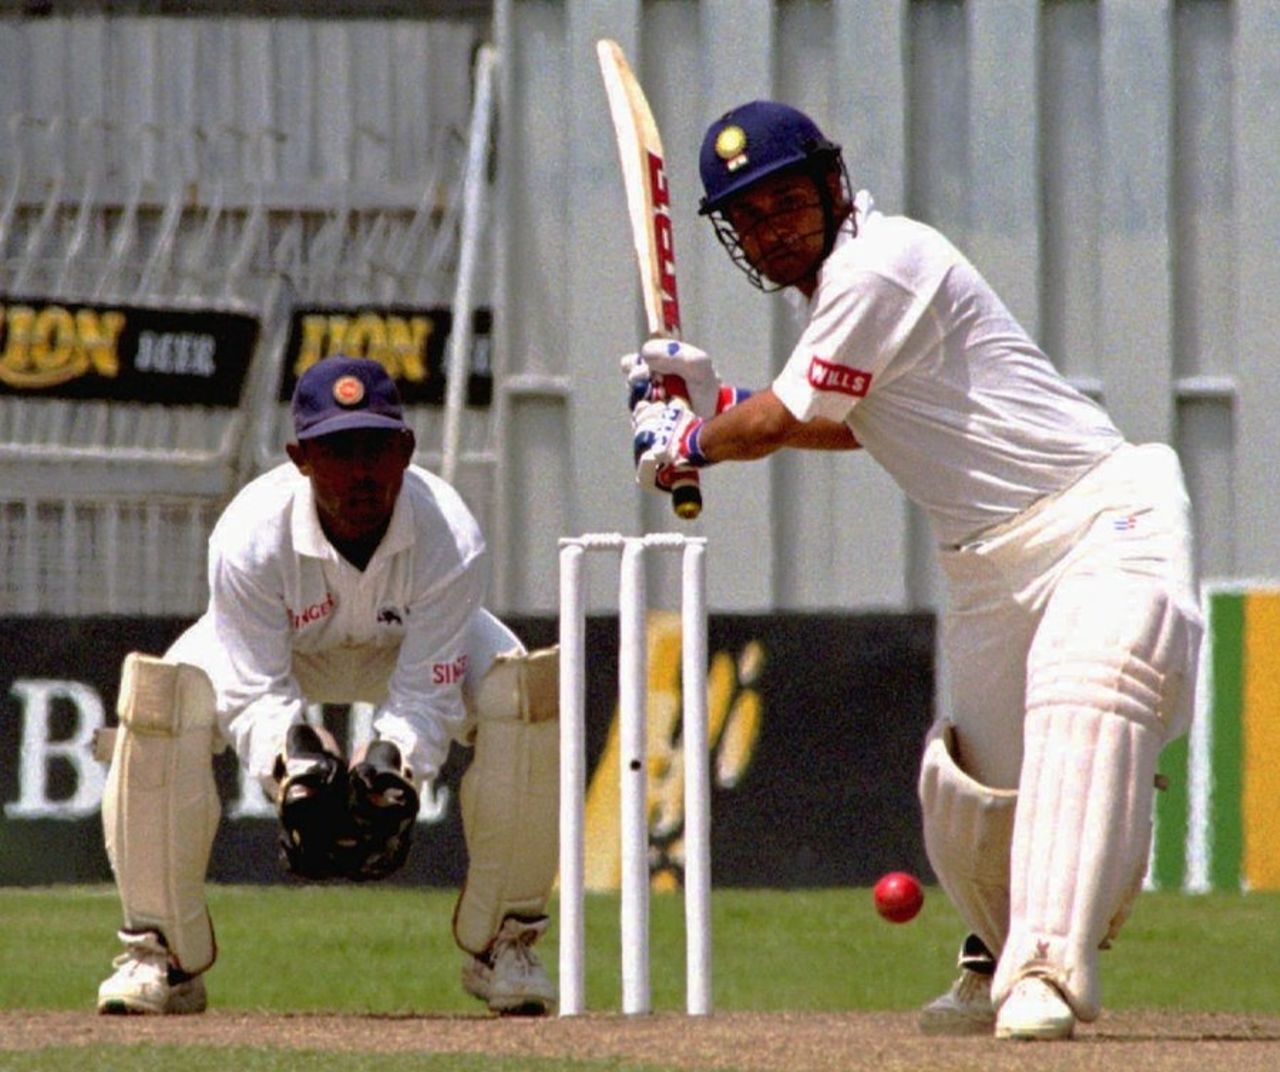 Sachin Tendulkar prepares to hit the ball, Sri Lanka v India, 1st Test, Premadasa Stadium, Colombo, August 2-6, 1994